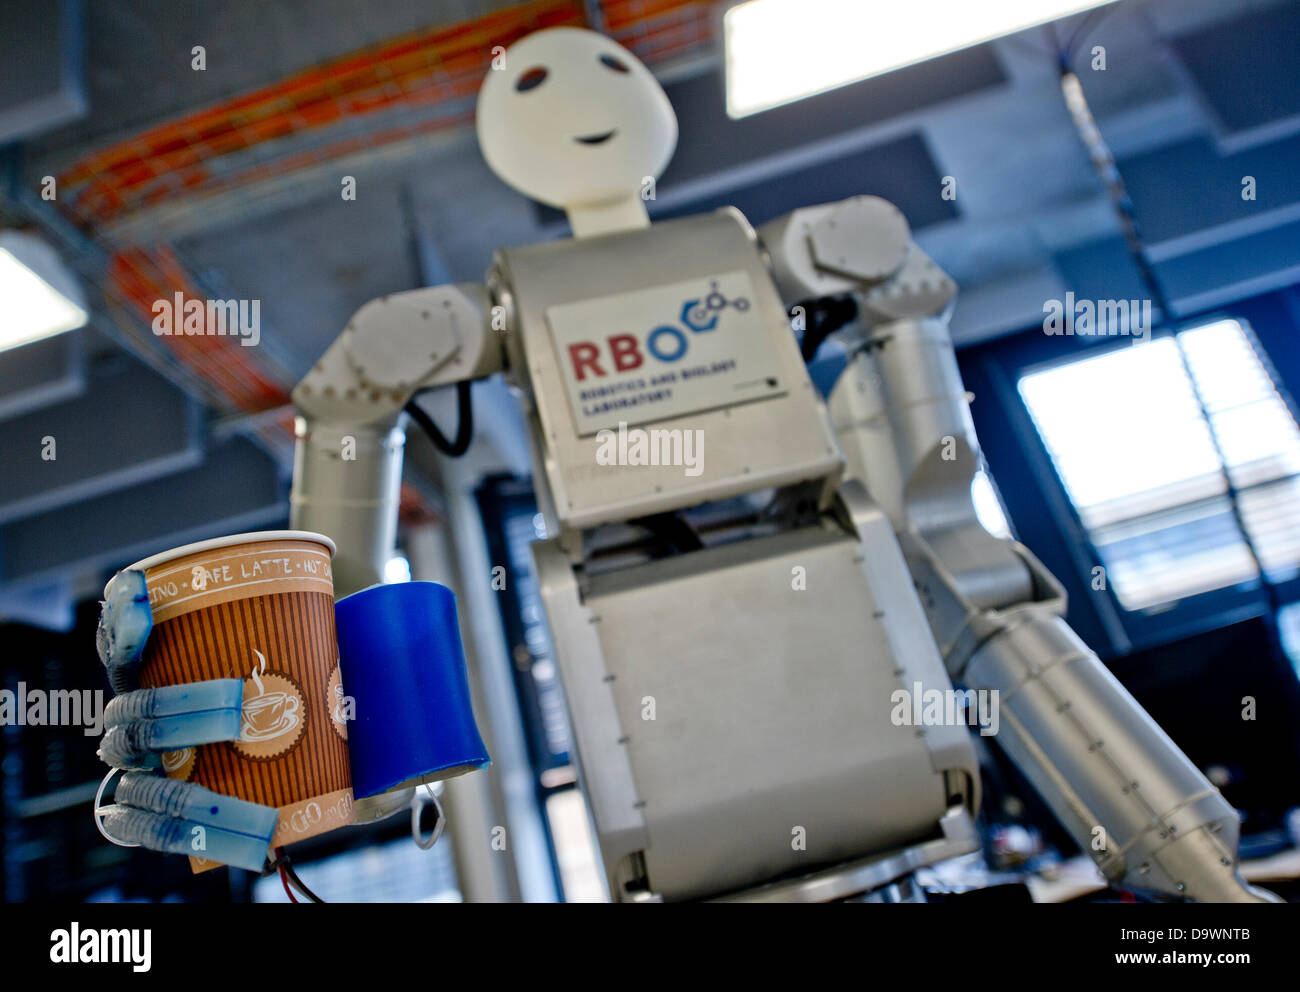 Robot 'Meka' fabbricato da 'Meka Robotics' detiene una tazza di caffè presso la Technische Universitaet (TU) di Berlino, Germania, 27 giugno 2013. Il 'Softhands' o 'RBO mano' sono state sviluppate dalla robotica e biologia (FR) Laboratorio di TU di Berlino. Foto: Nicolas Armer Foto Stock